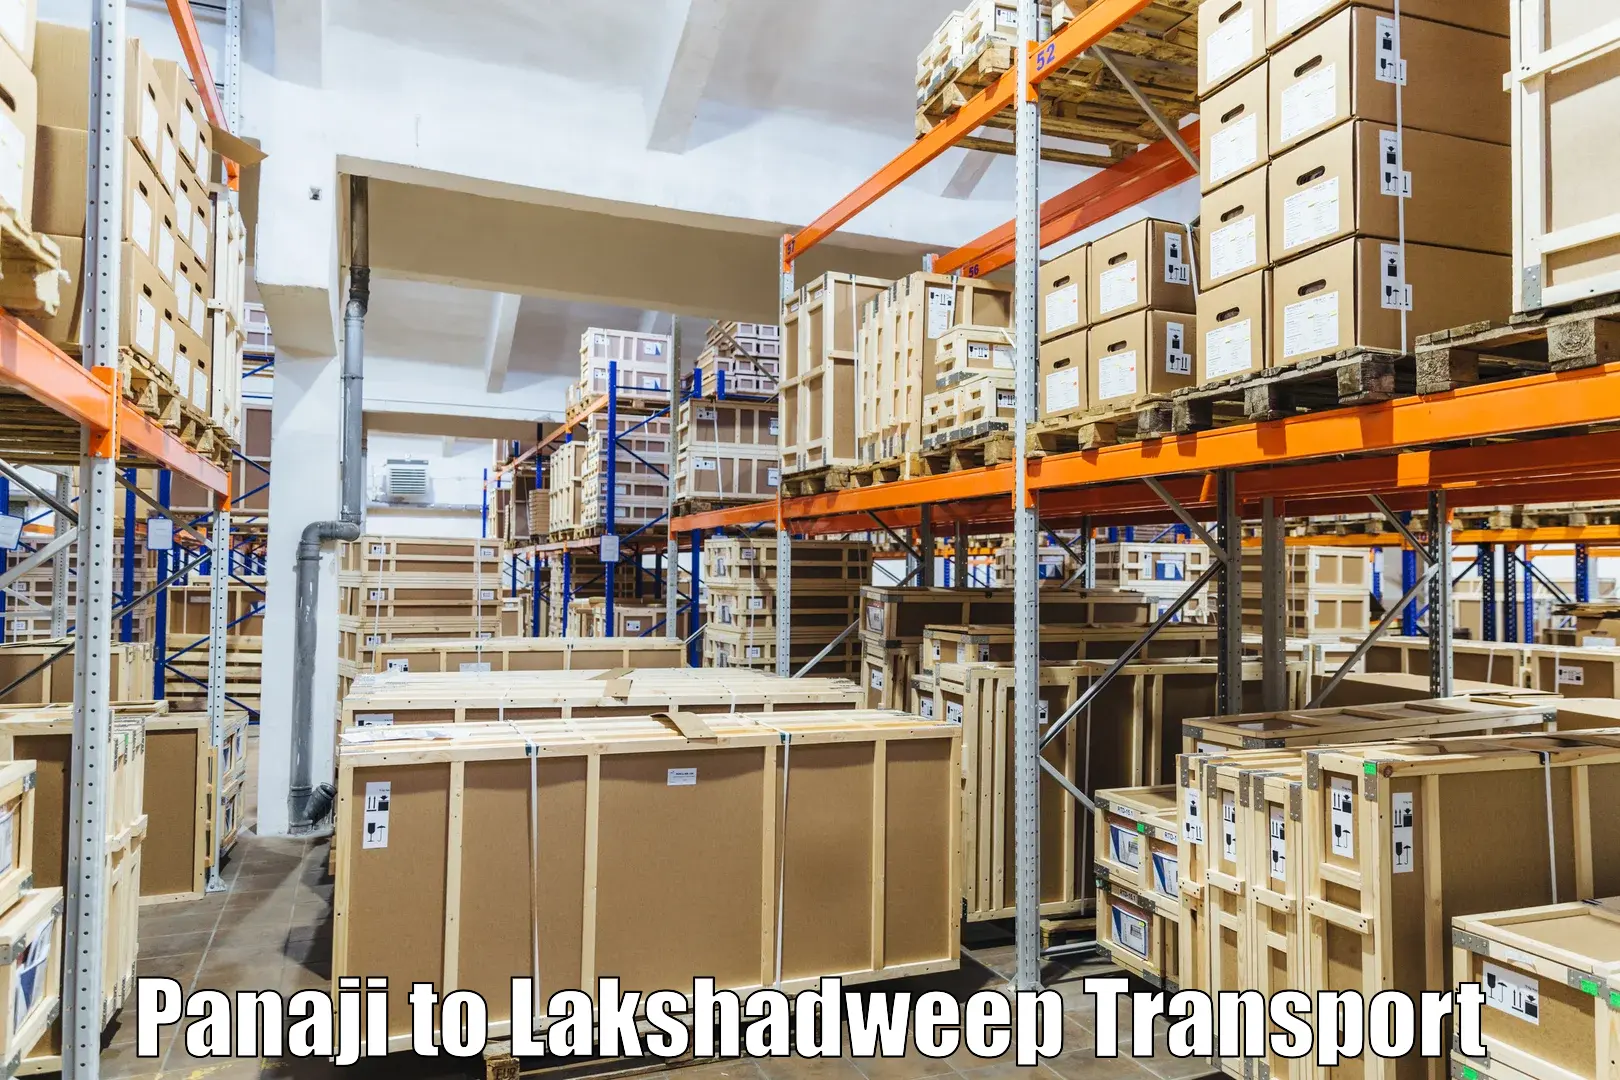 Furniture transport service Panaji to Lakshadweep